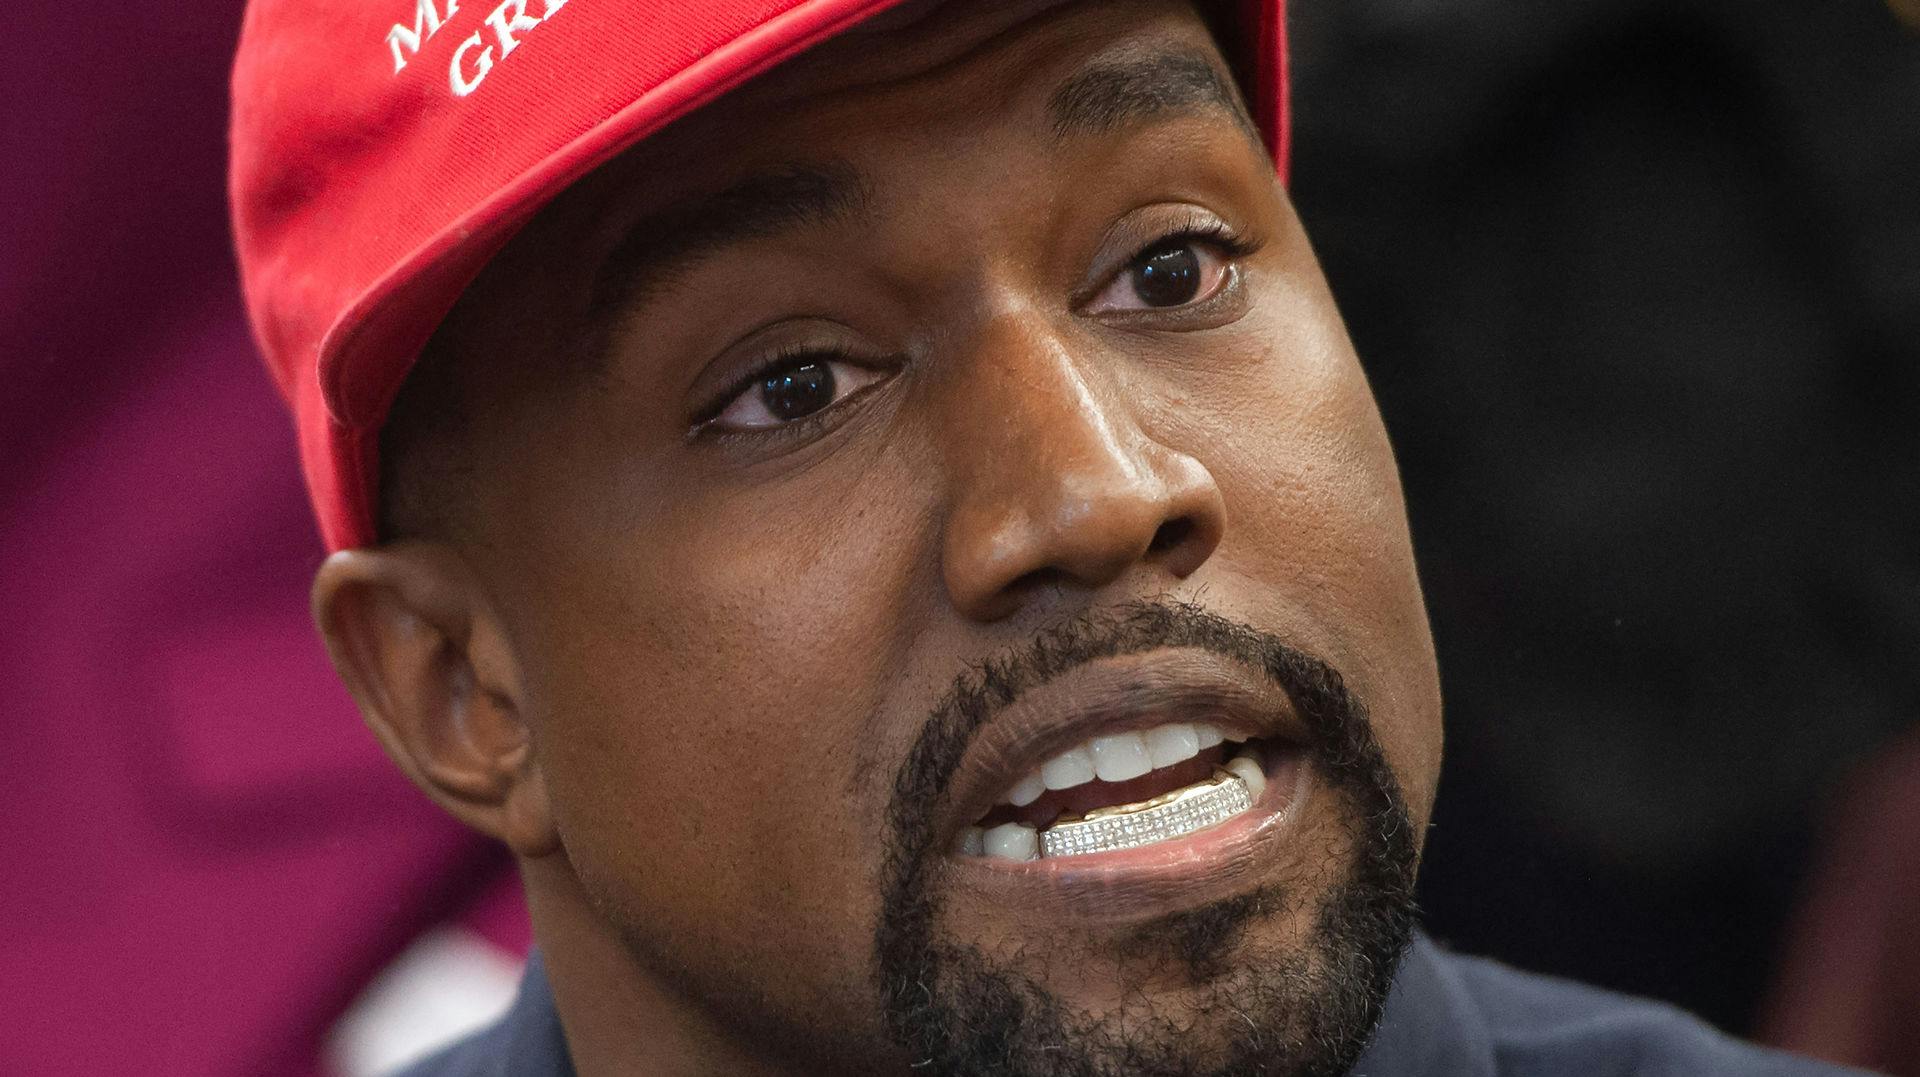 Ye, tidligere kendt som Kanye West, får sin Twitter-profil suspenderet, fordi han har brudt Twitters regler for tilskyndelse til vold.